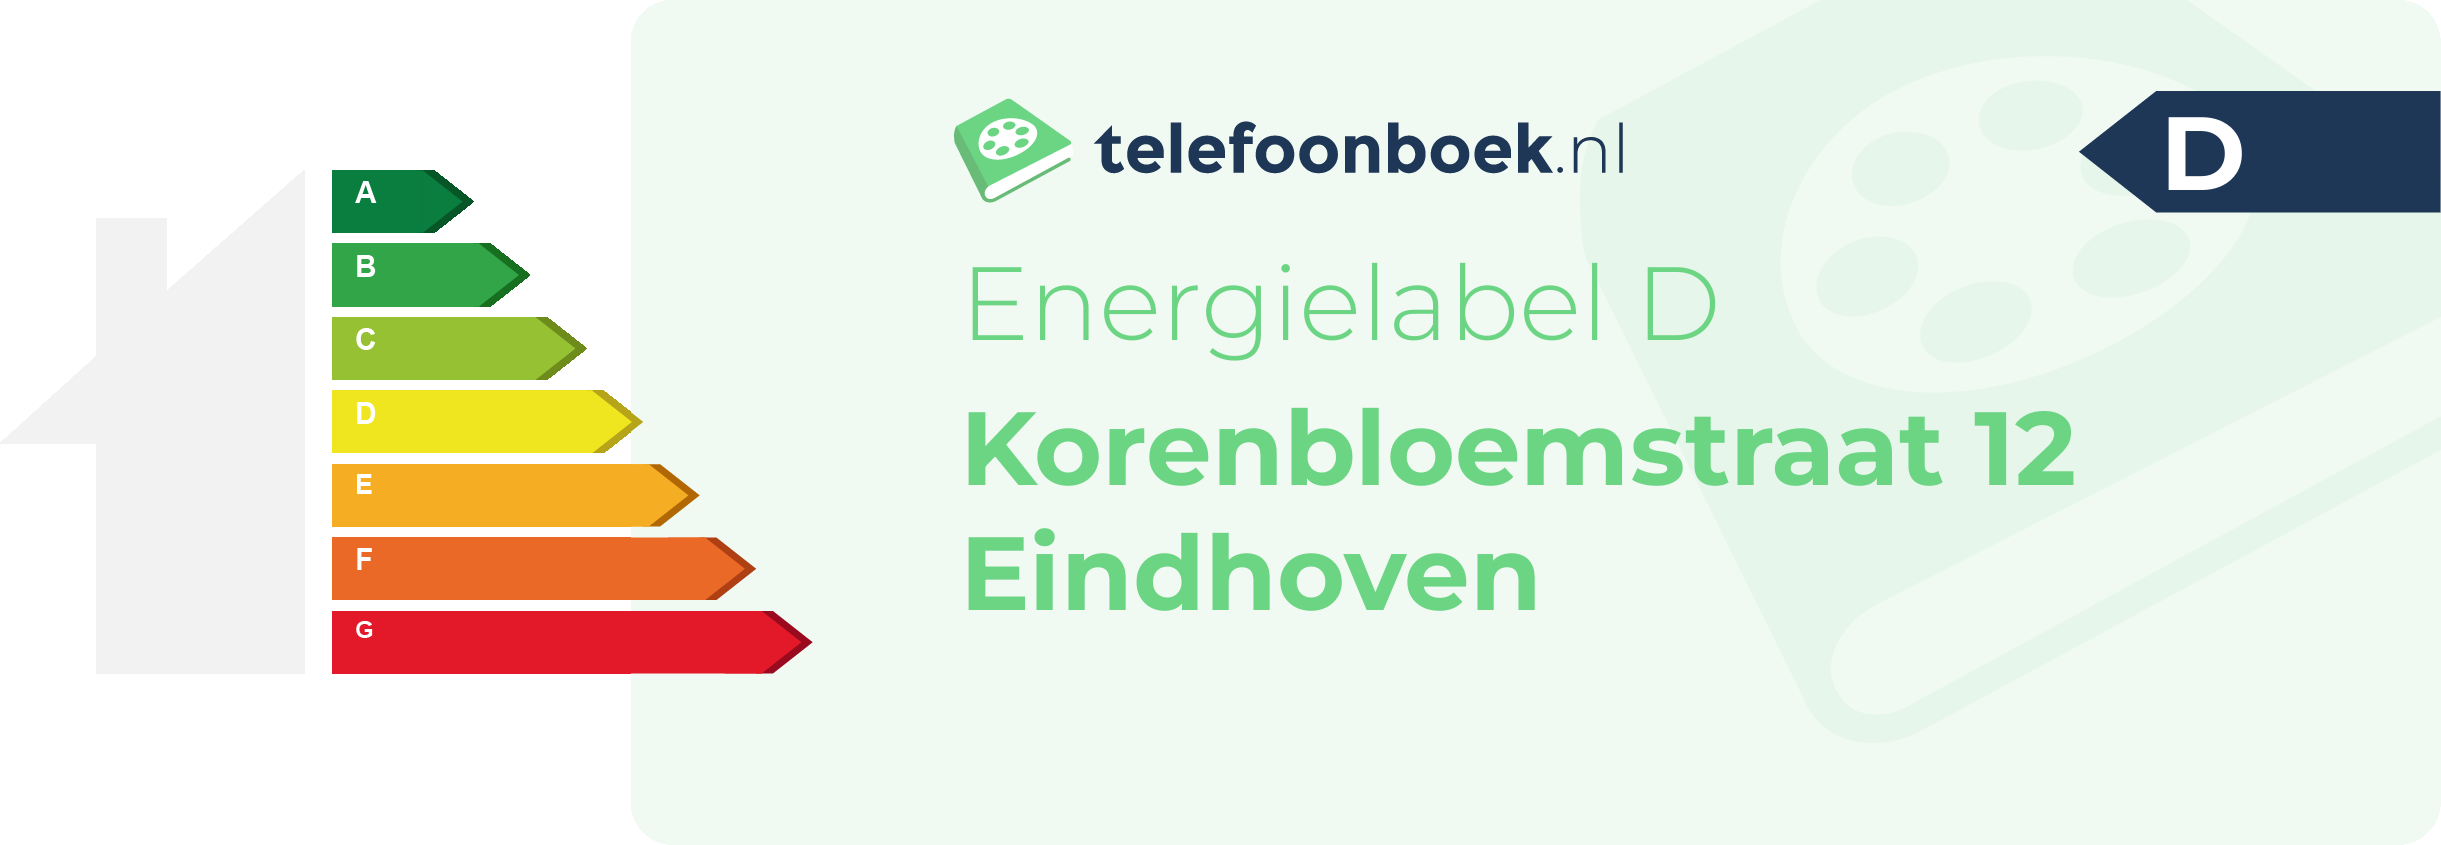 Energielabel Korenbloemstraat 12 Eindhoven